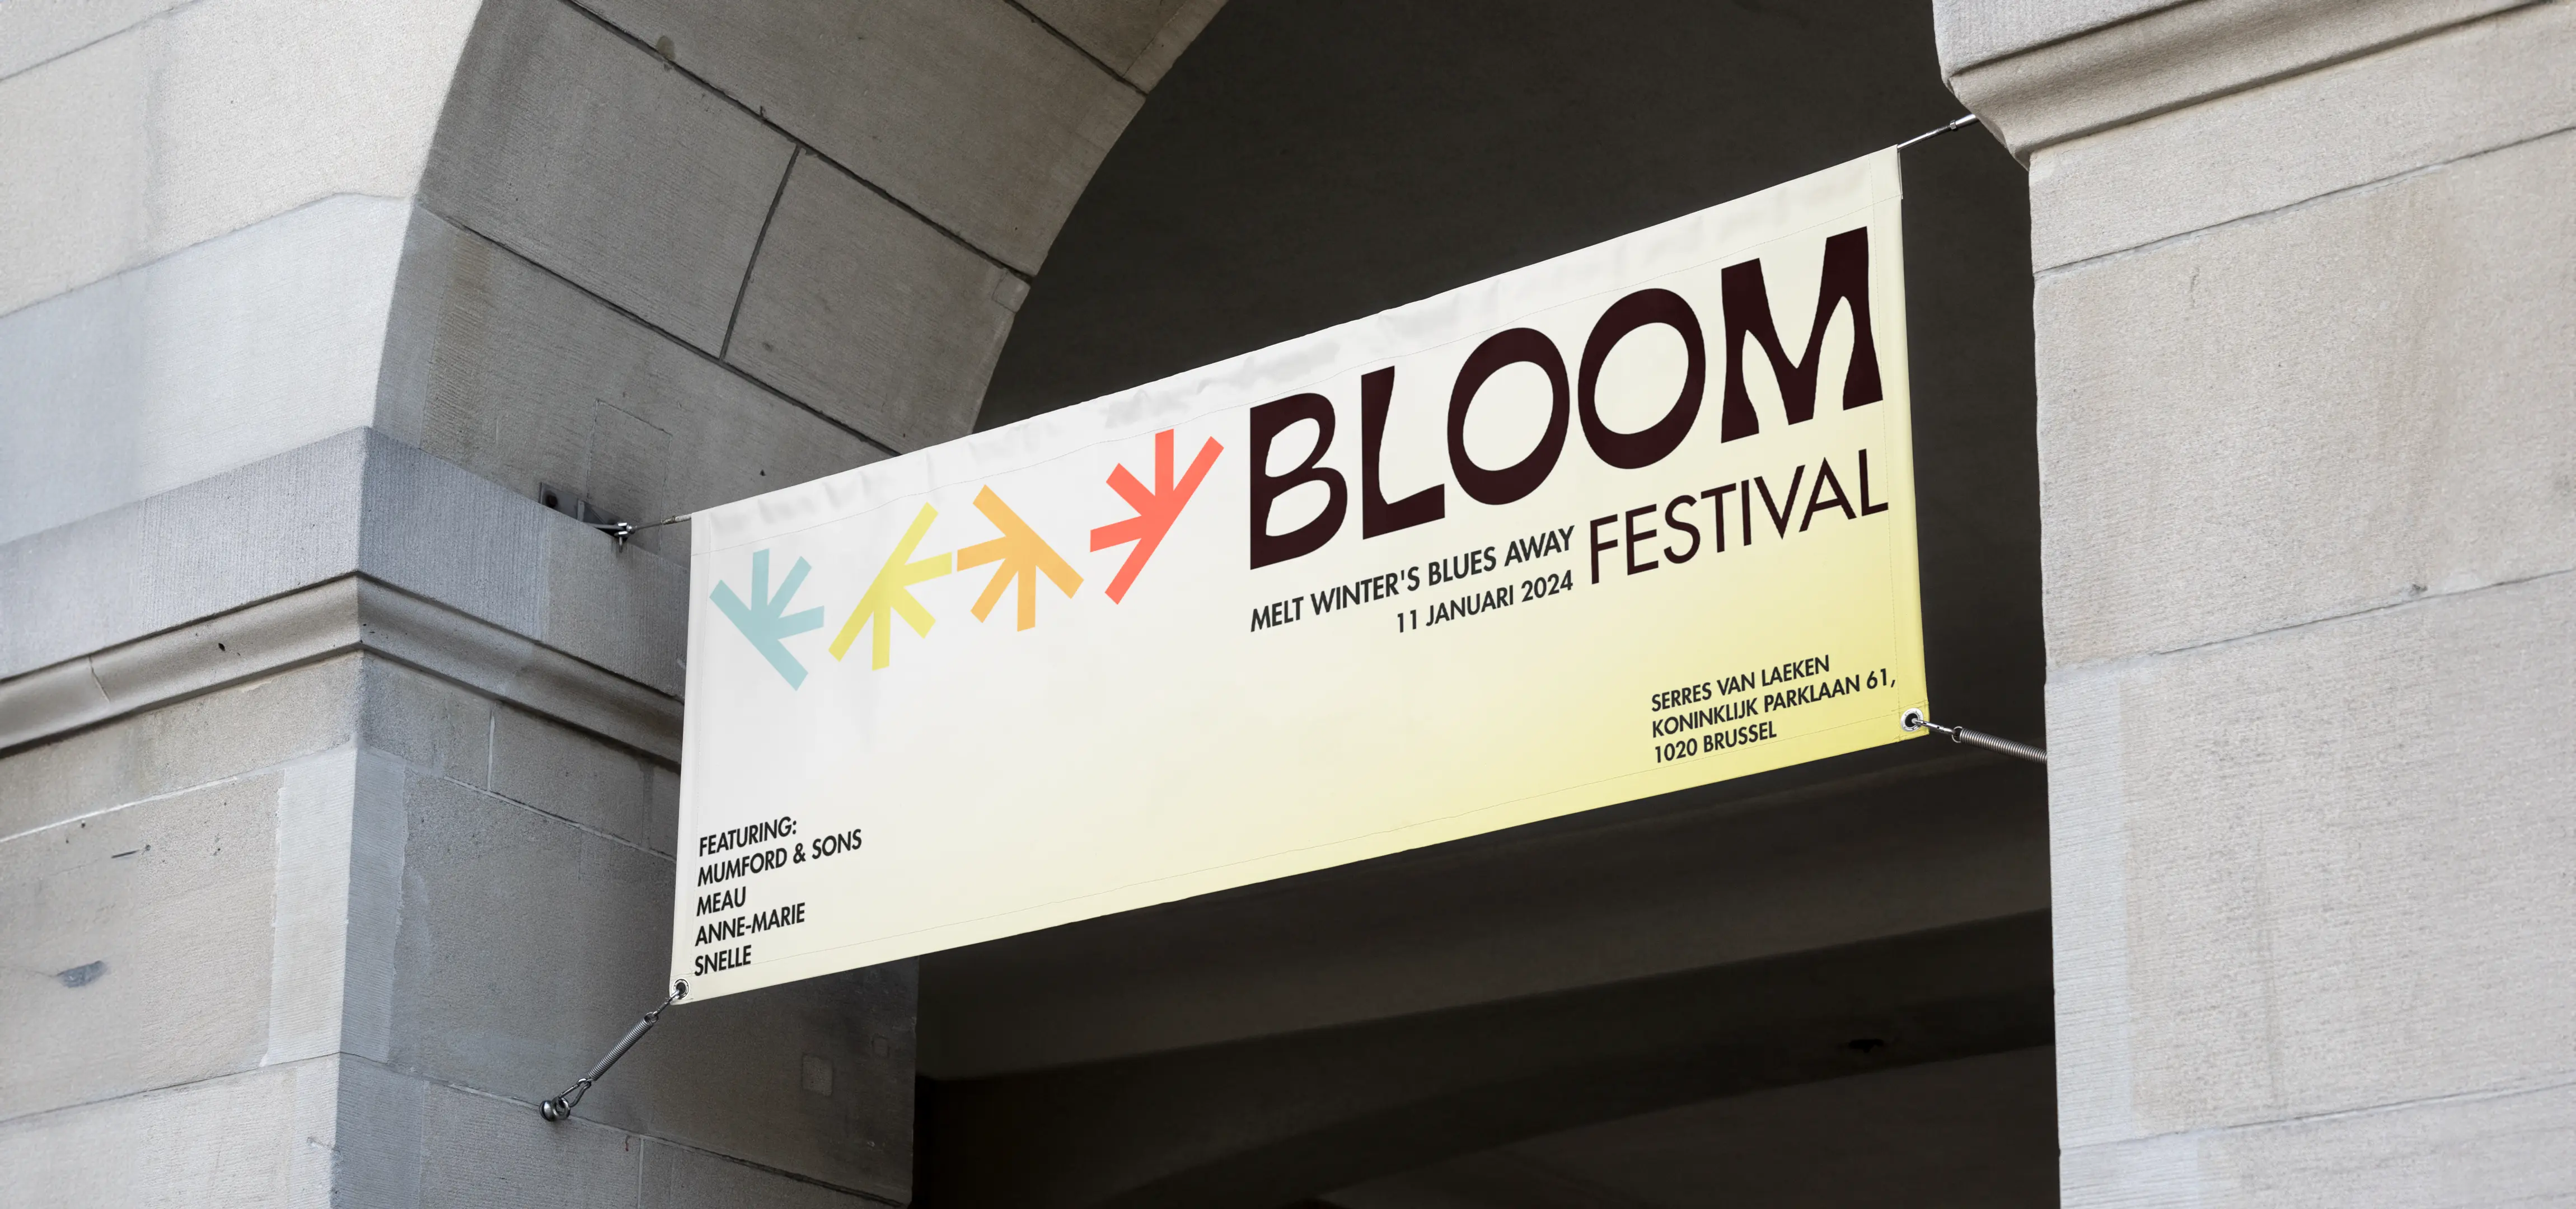 Bloom festival banner